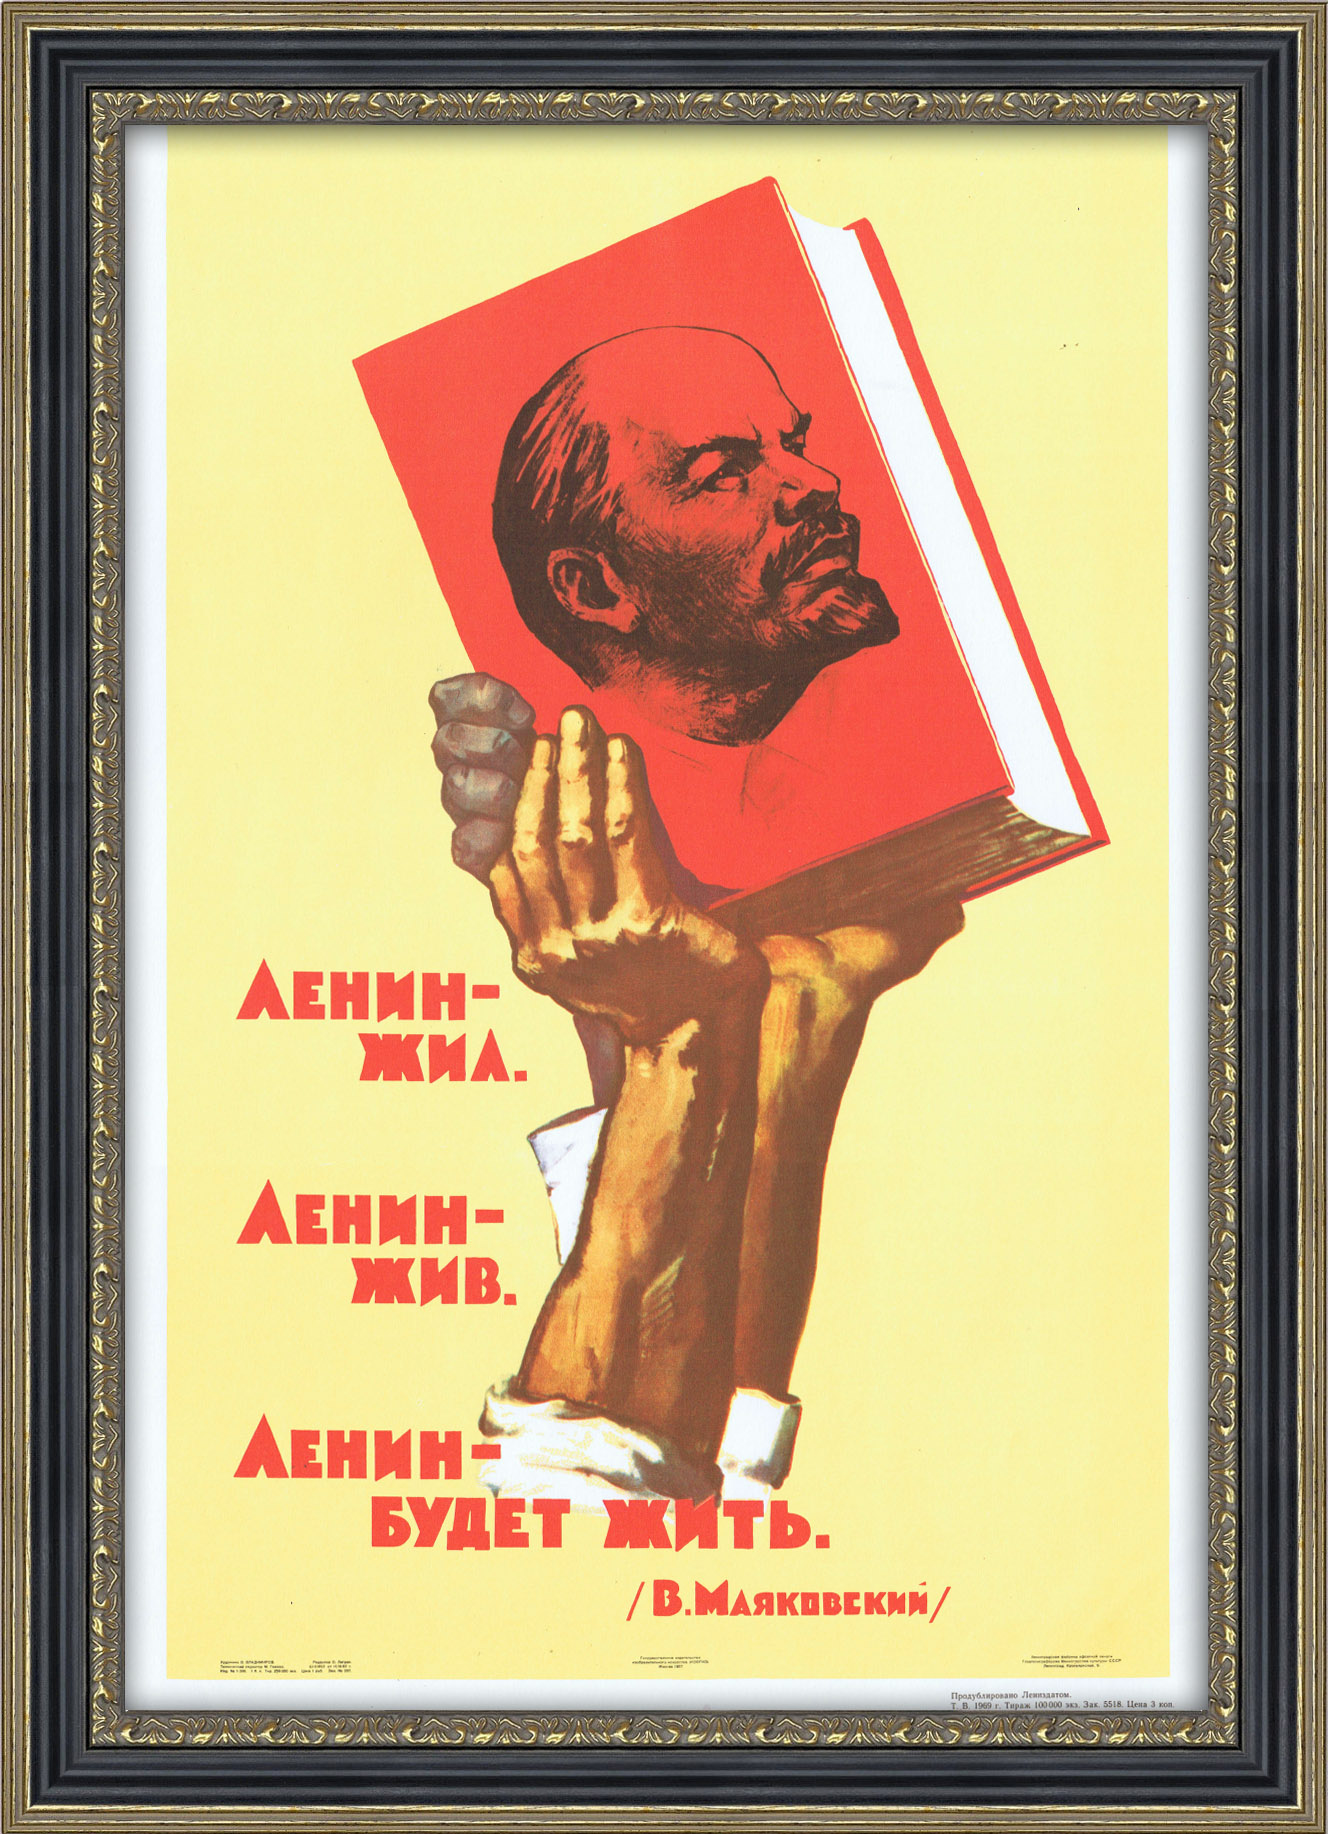 Ленин жил ленин жив ленин будет жить картинки